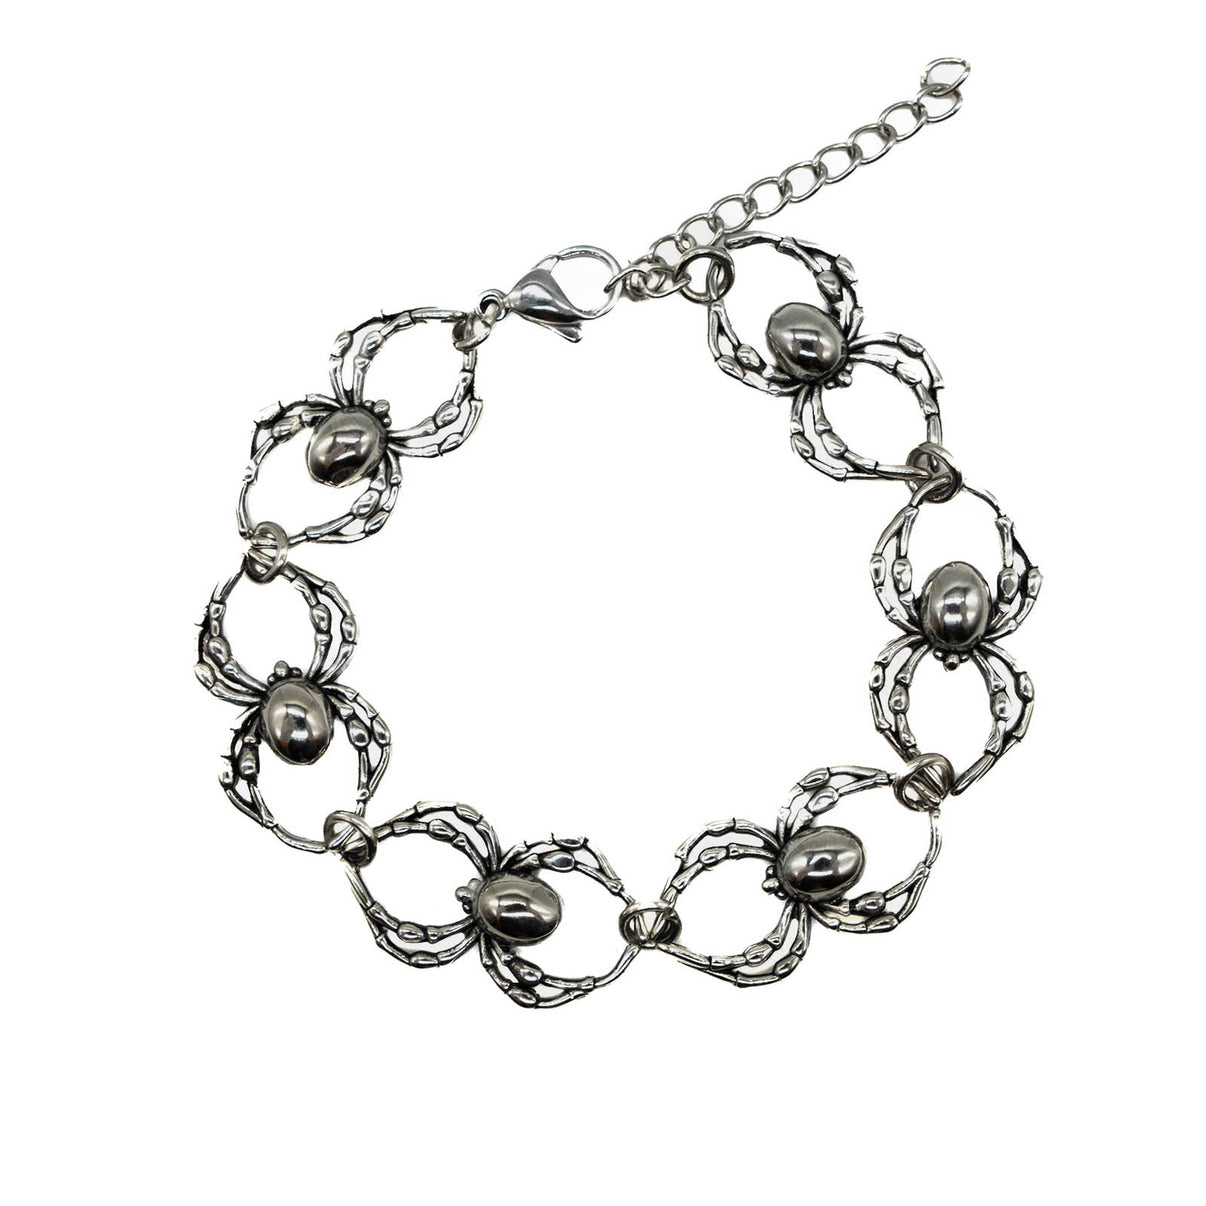 Orb Weaver Spider Bracelet | Mysticum Luna Bracelets